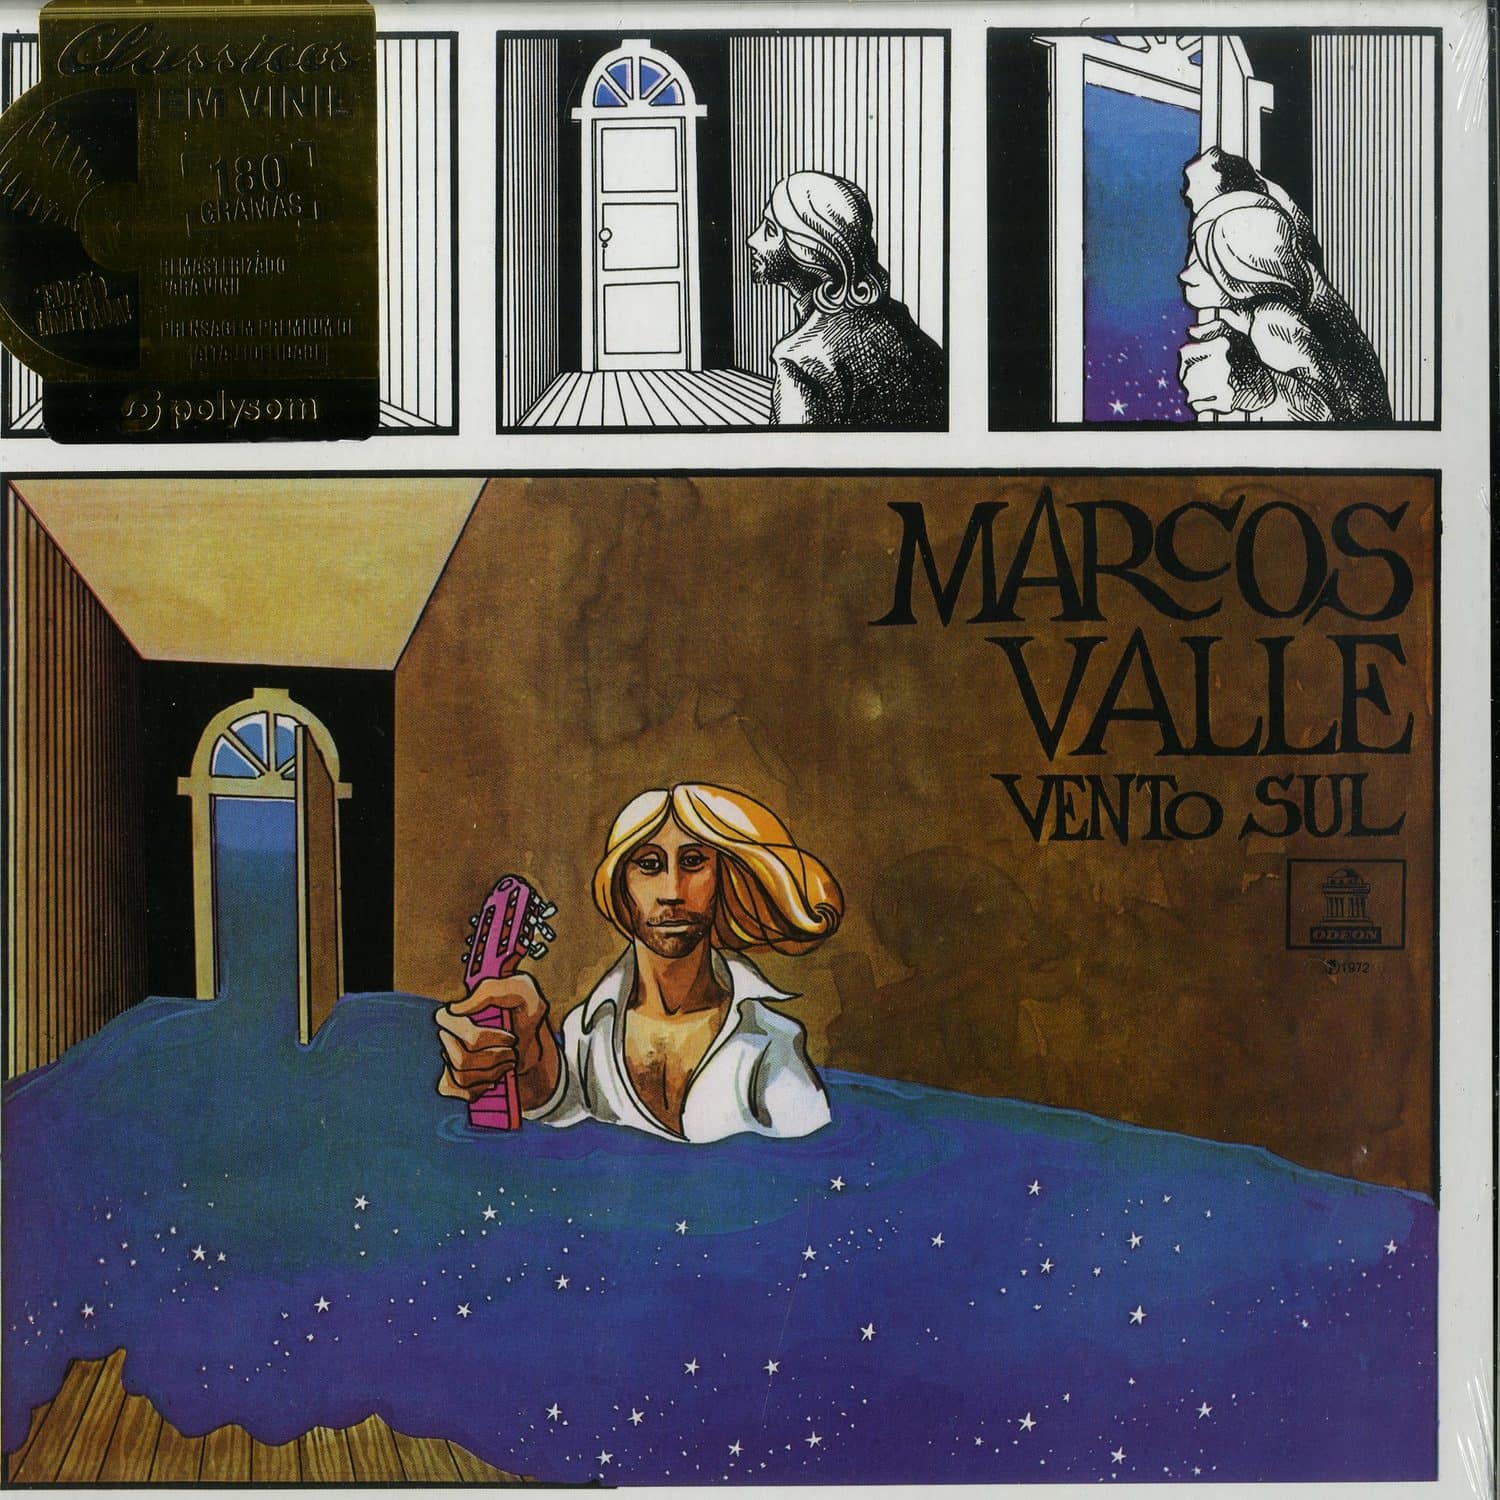 Marcos Valle - VENTO SUL 